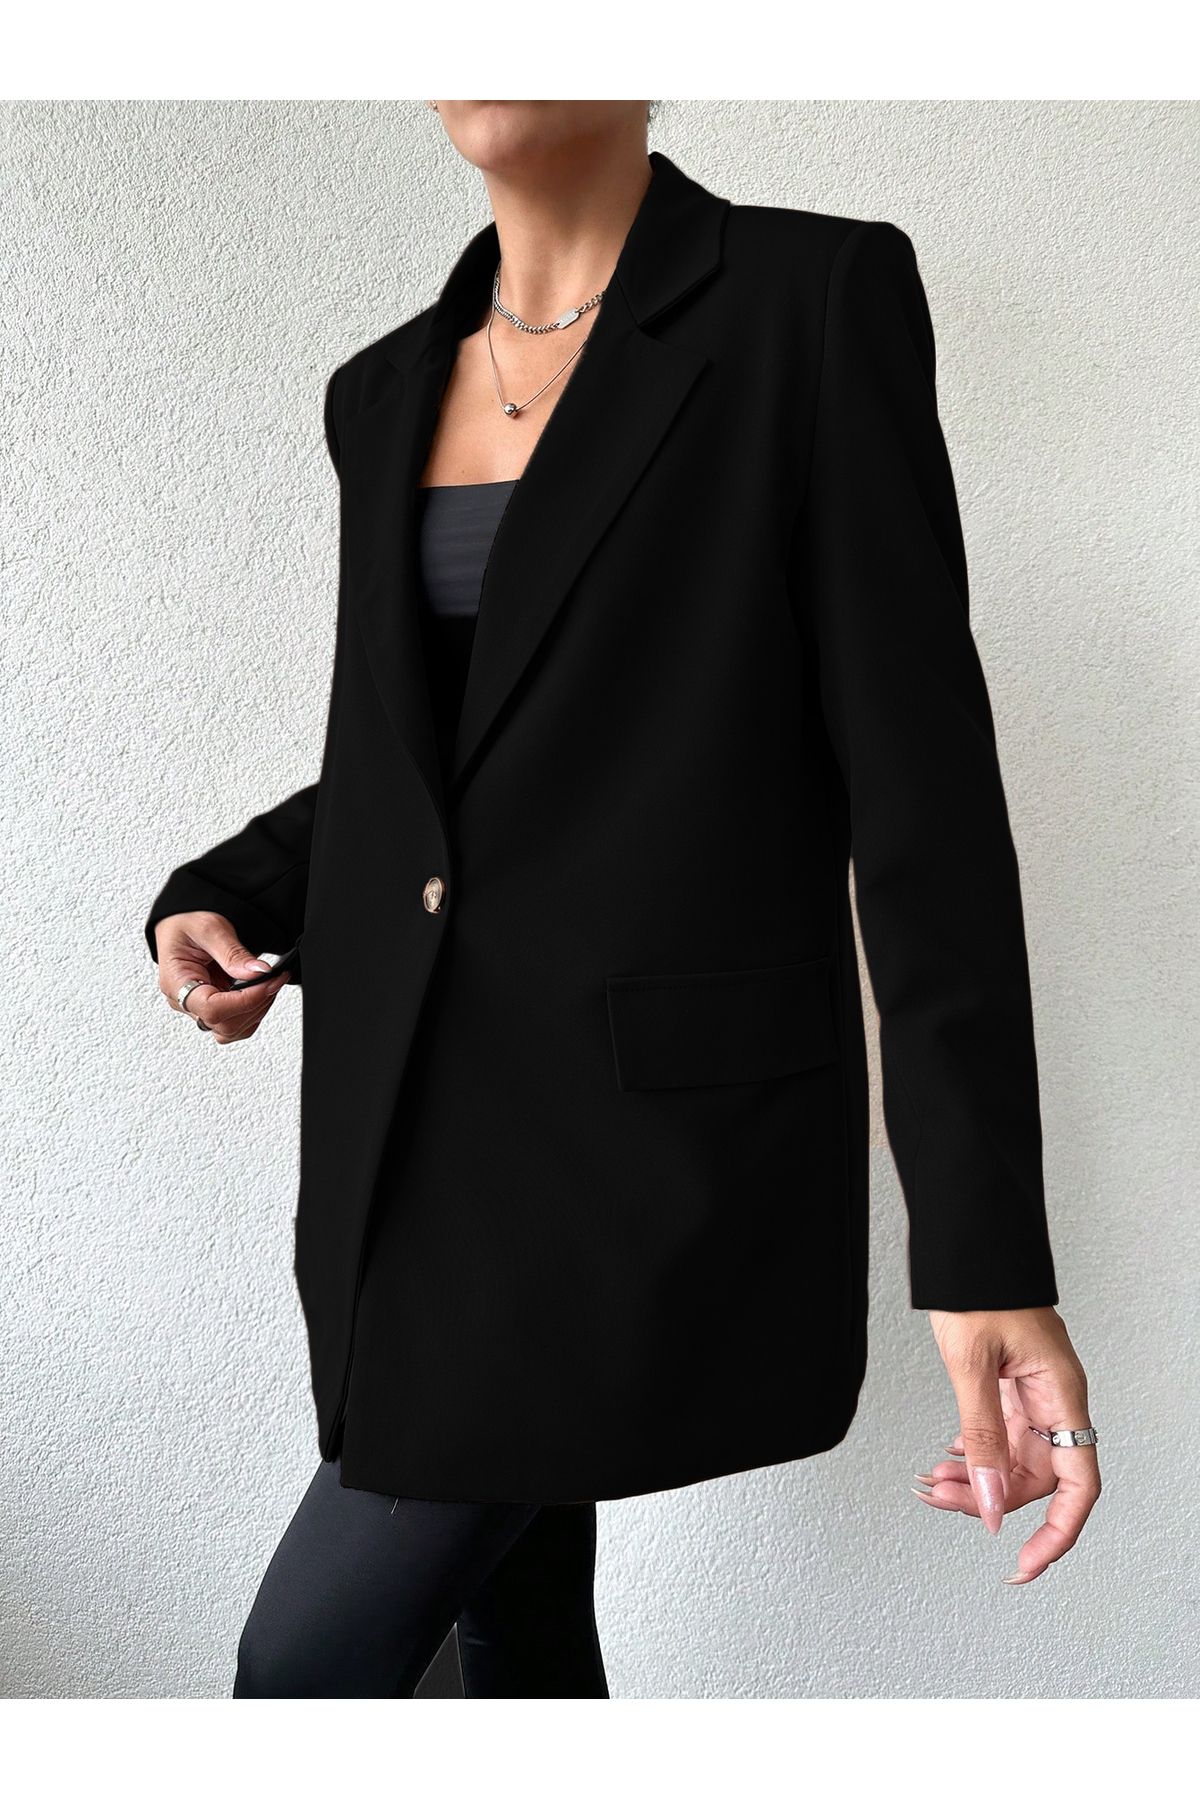 Smartex Astarlı Oversize Dokuma Siyah Kadın Ceket CKT0013